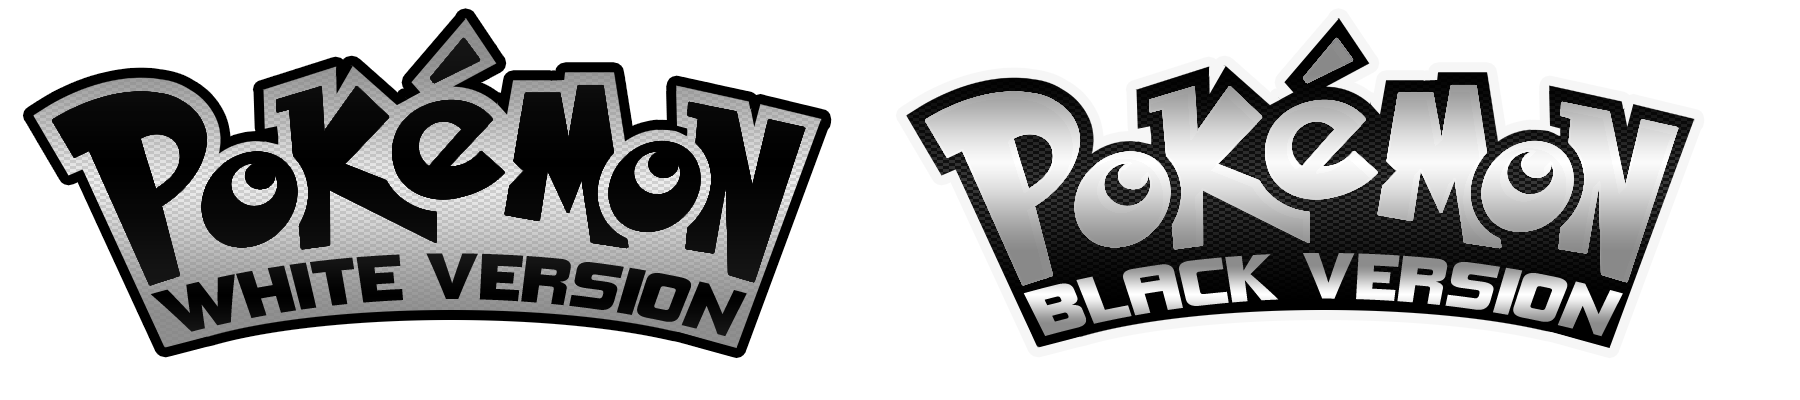 Pokemon Black And White. Pokémon Black & White Versions